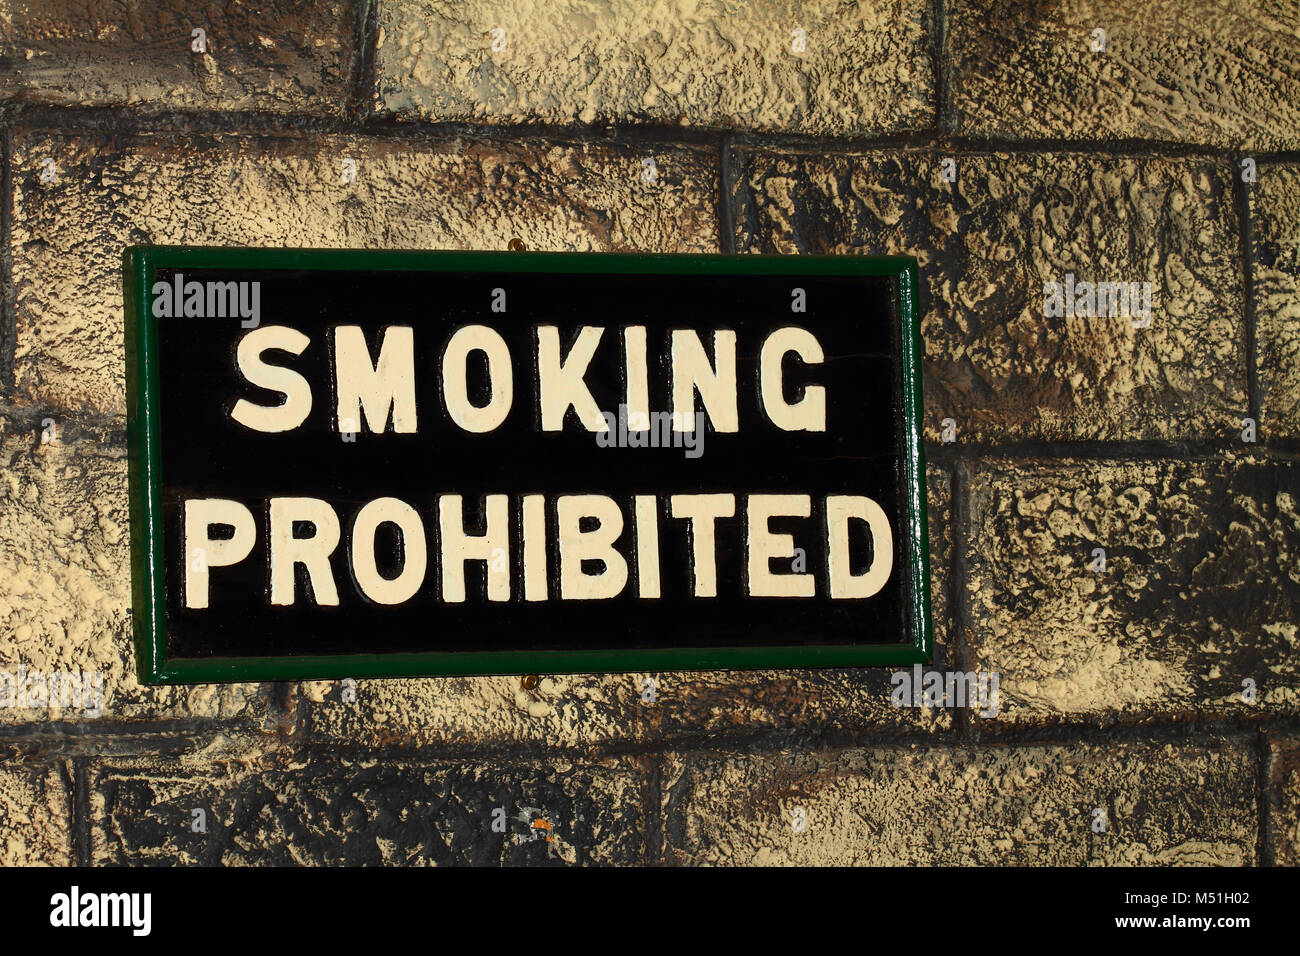 Smoking prohibited sign Stock Photo